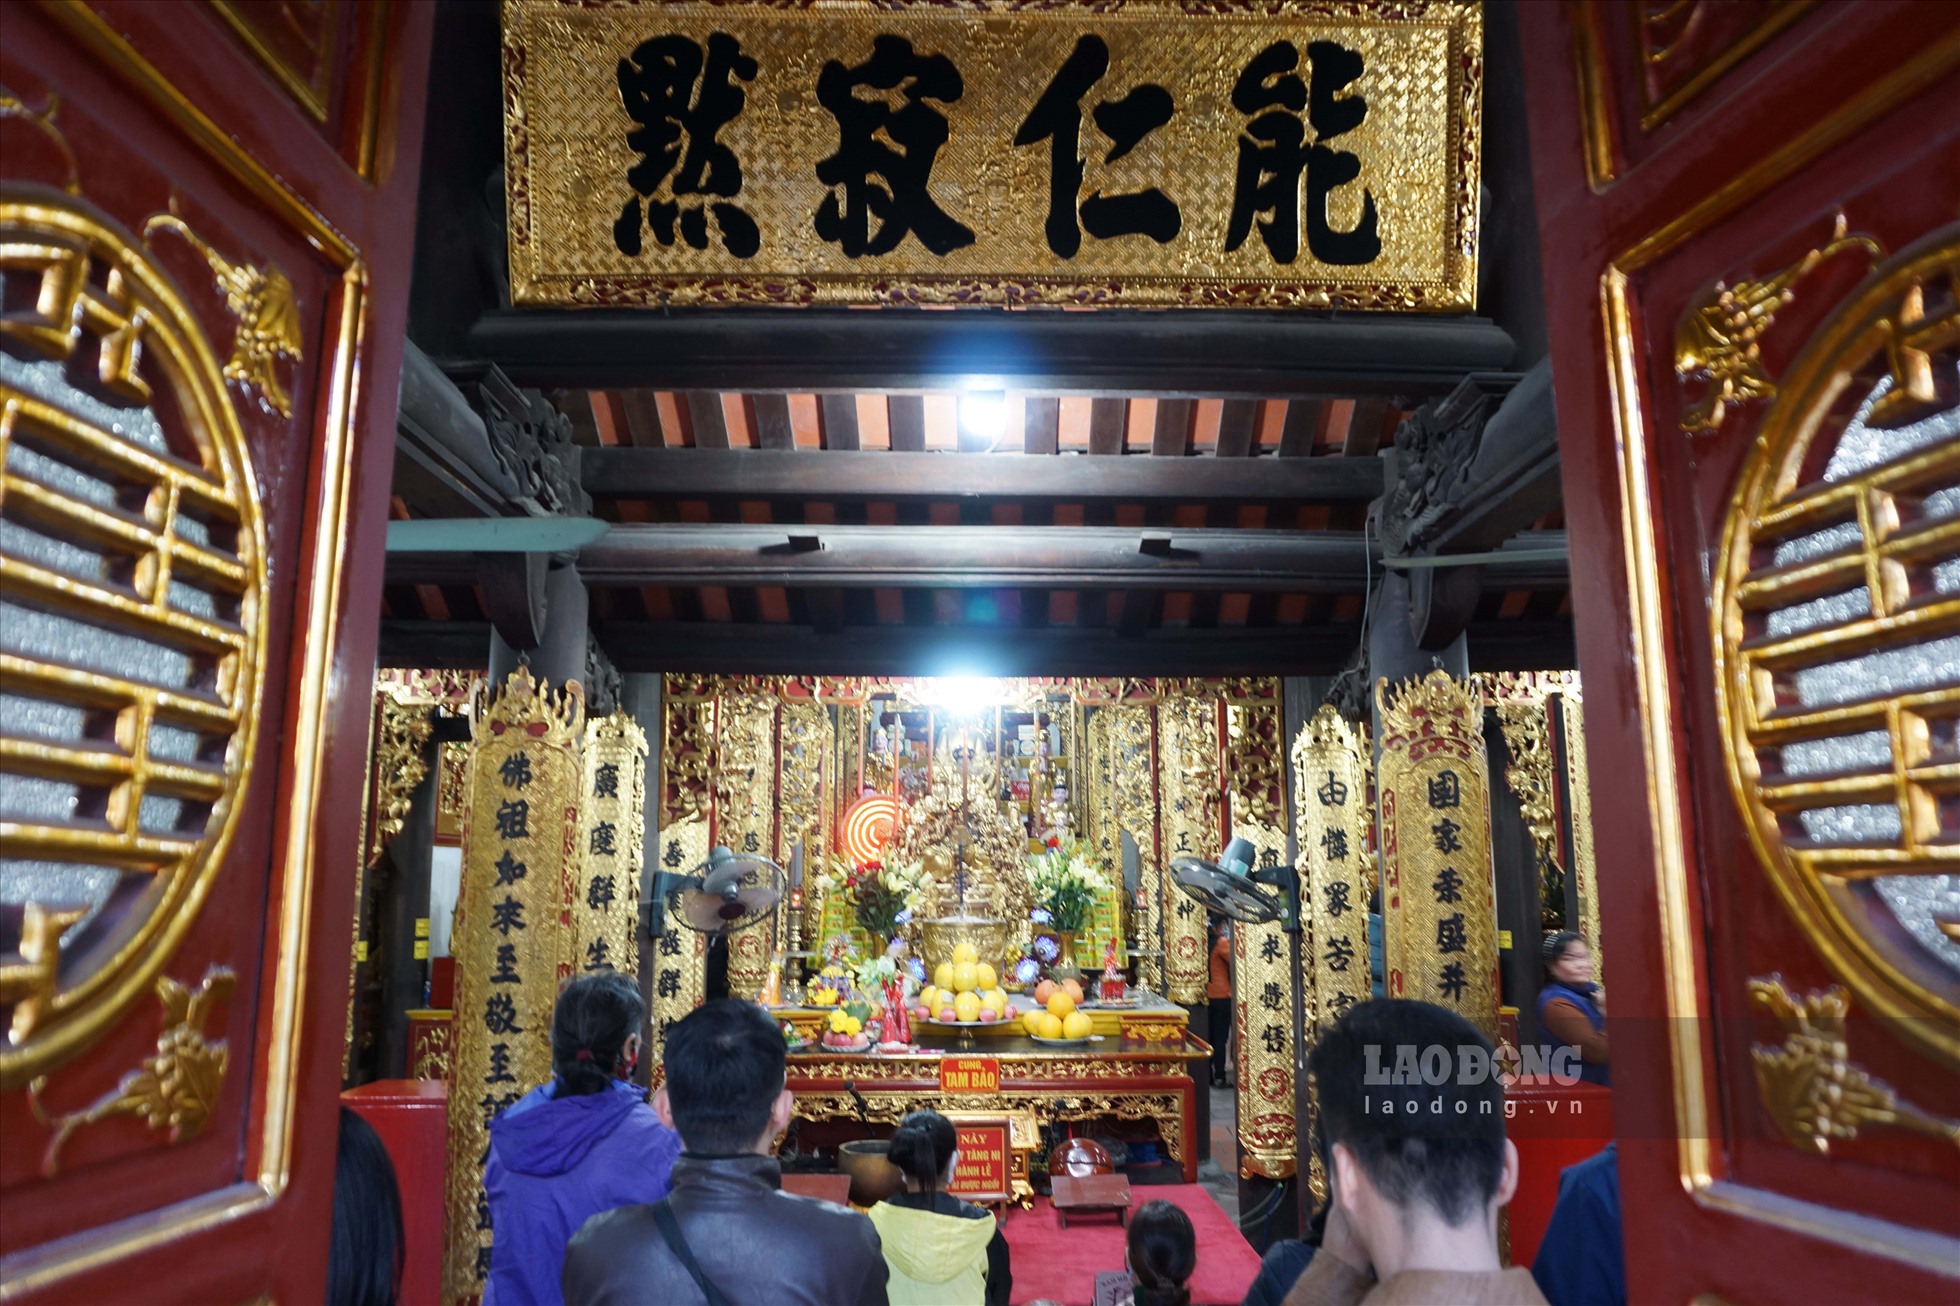 Tại chùa Long Tiên vừa thờ cúng phái Bắc Tông, vừa thờ cúng các vị tướng thời Trần, đồng thời còn thờ các chư Phật theo quan niệm tôn giáo của người Việt.